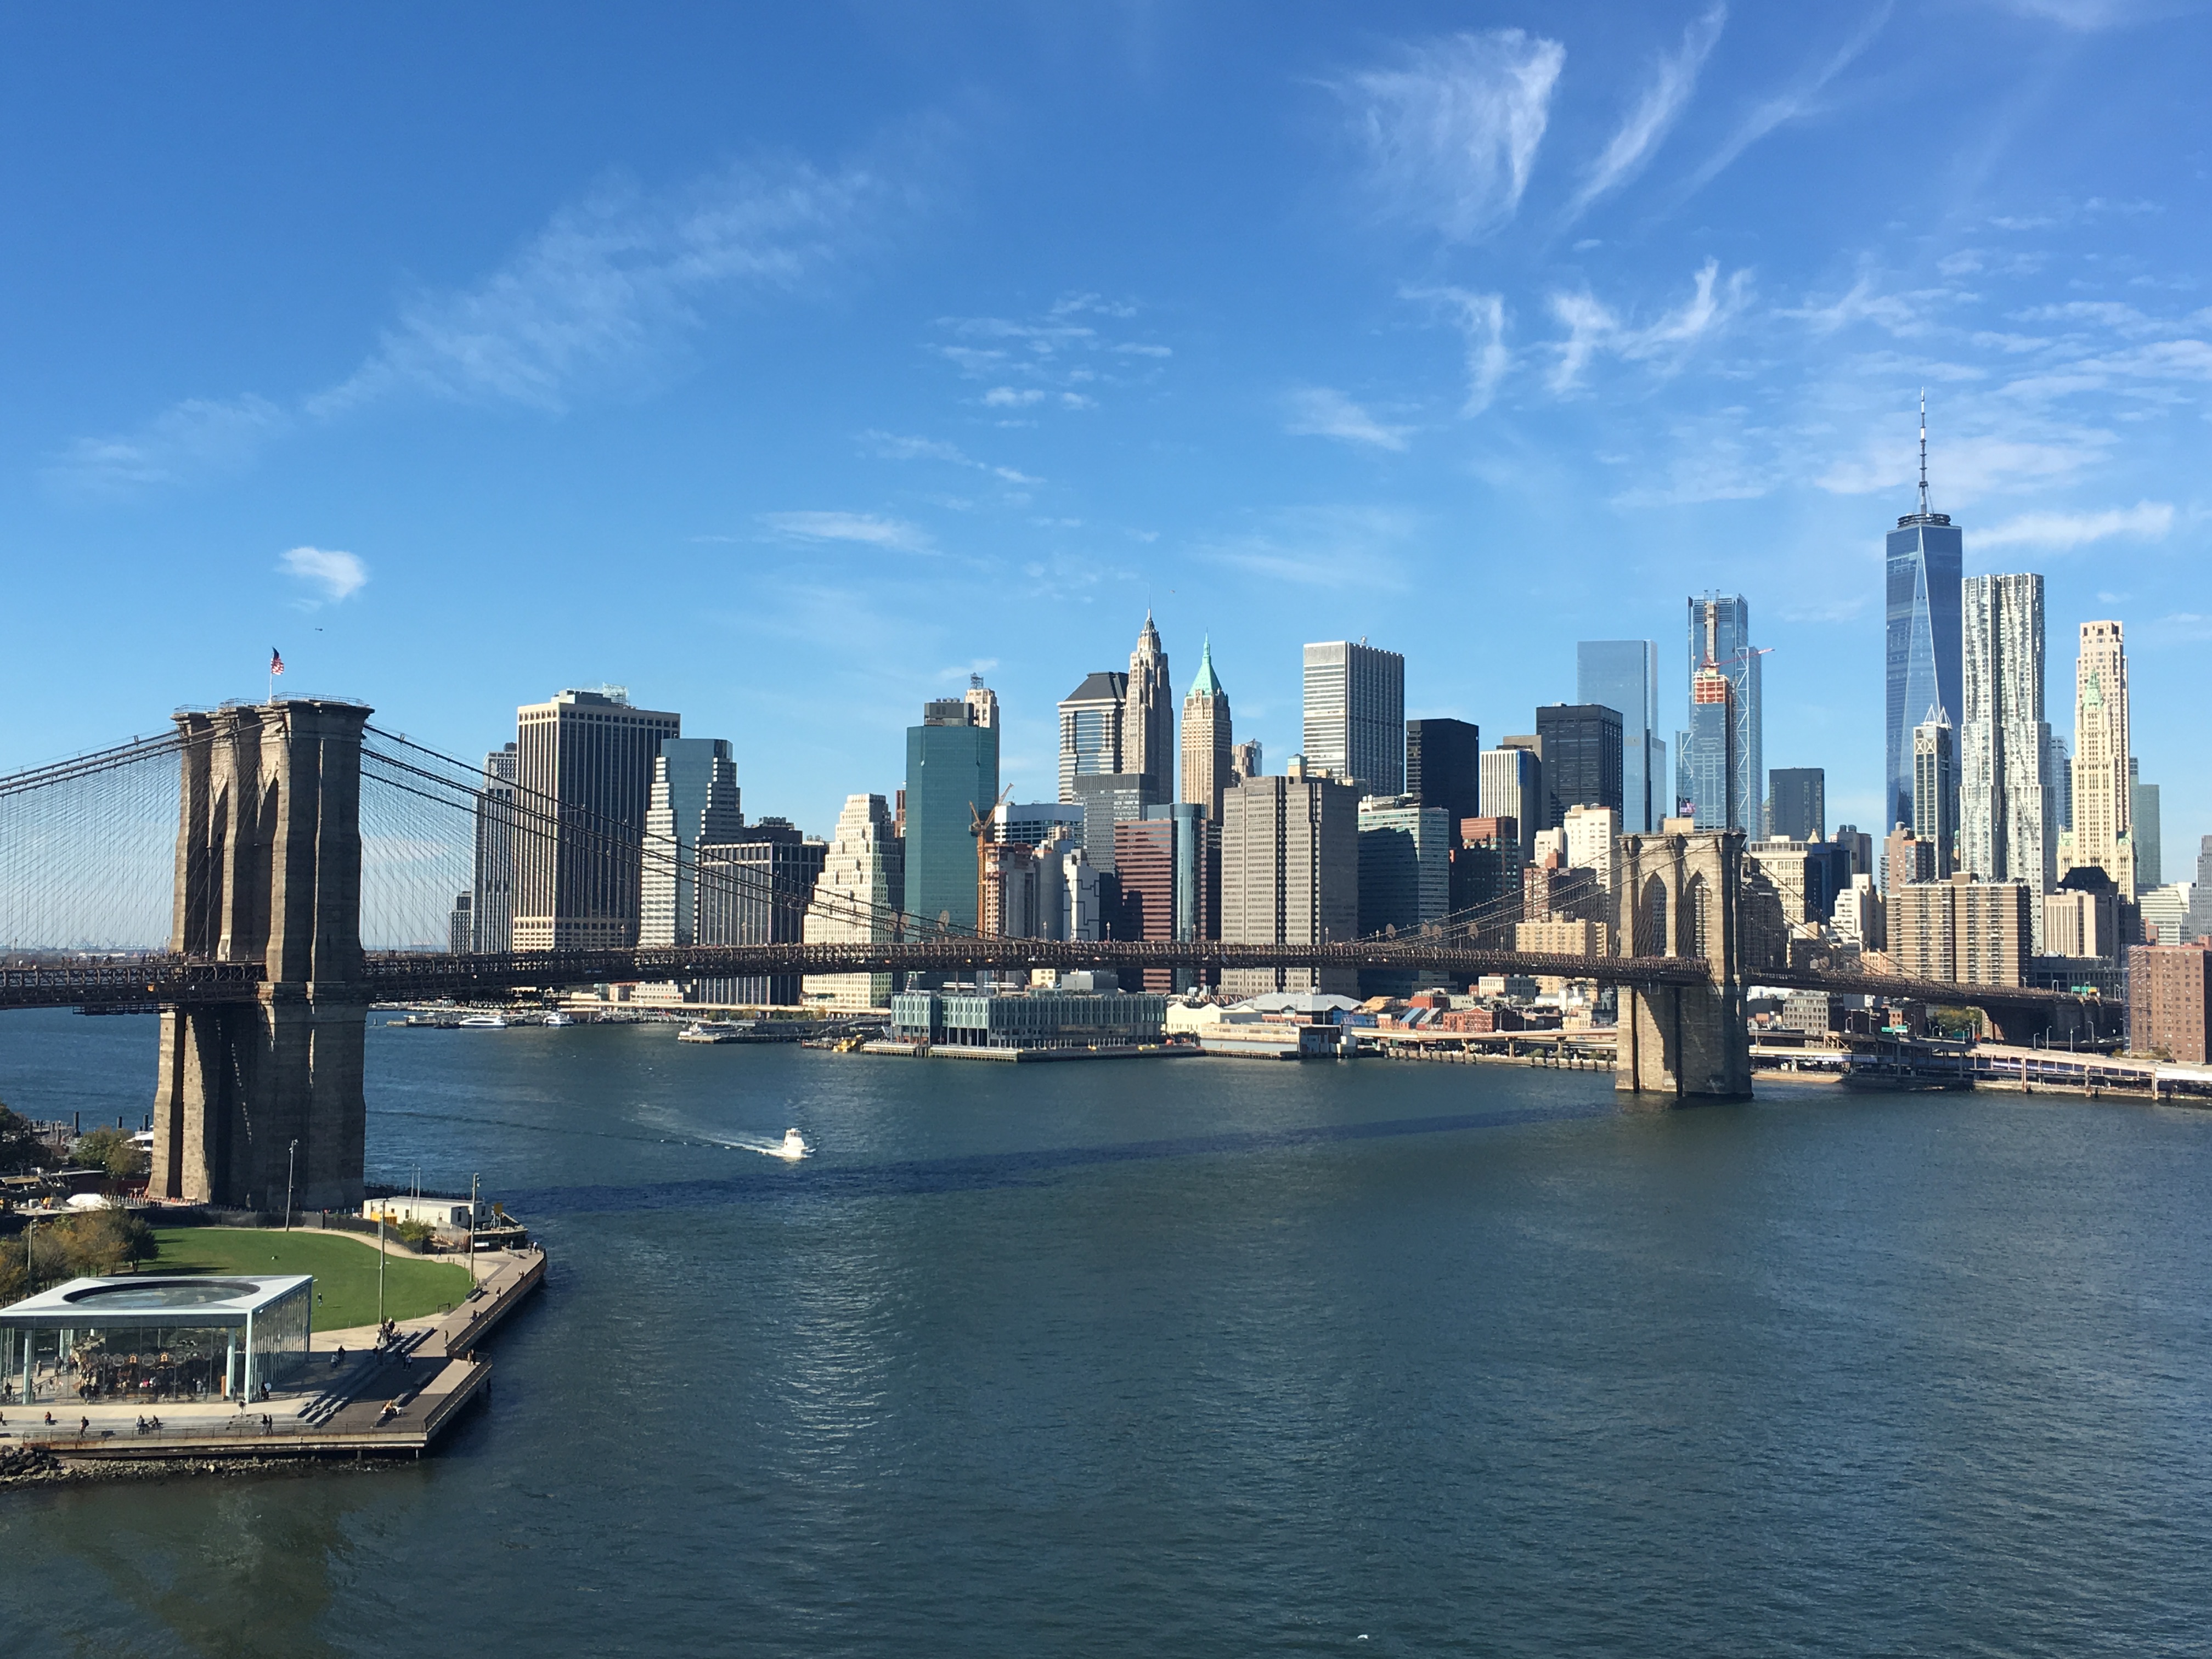 Manhattan Skyline and Brooklyn Bridge taken from Manhattan Bridge